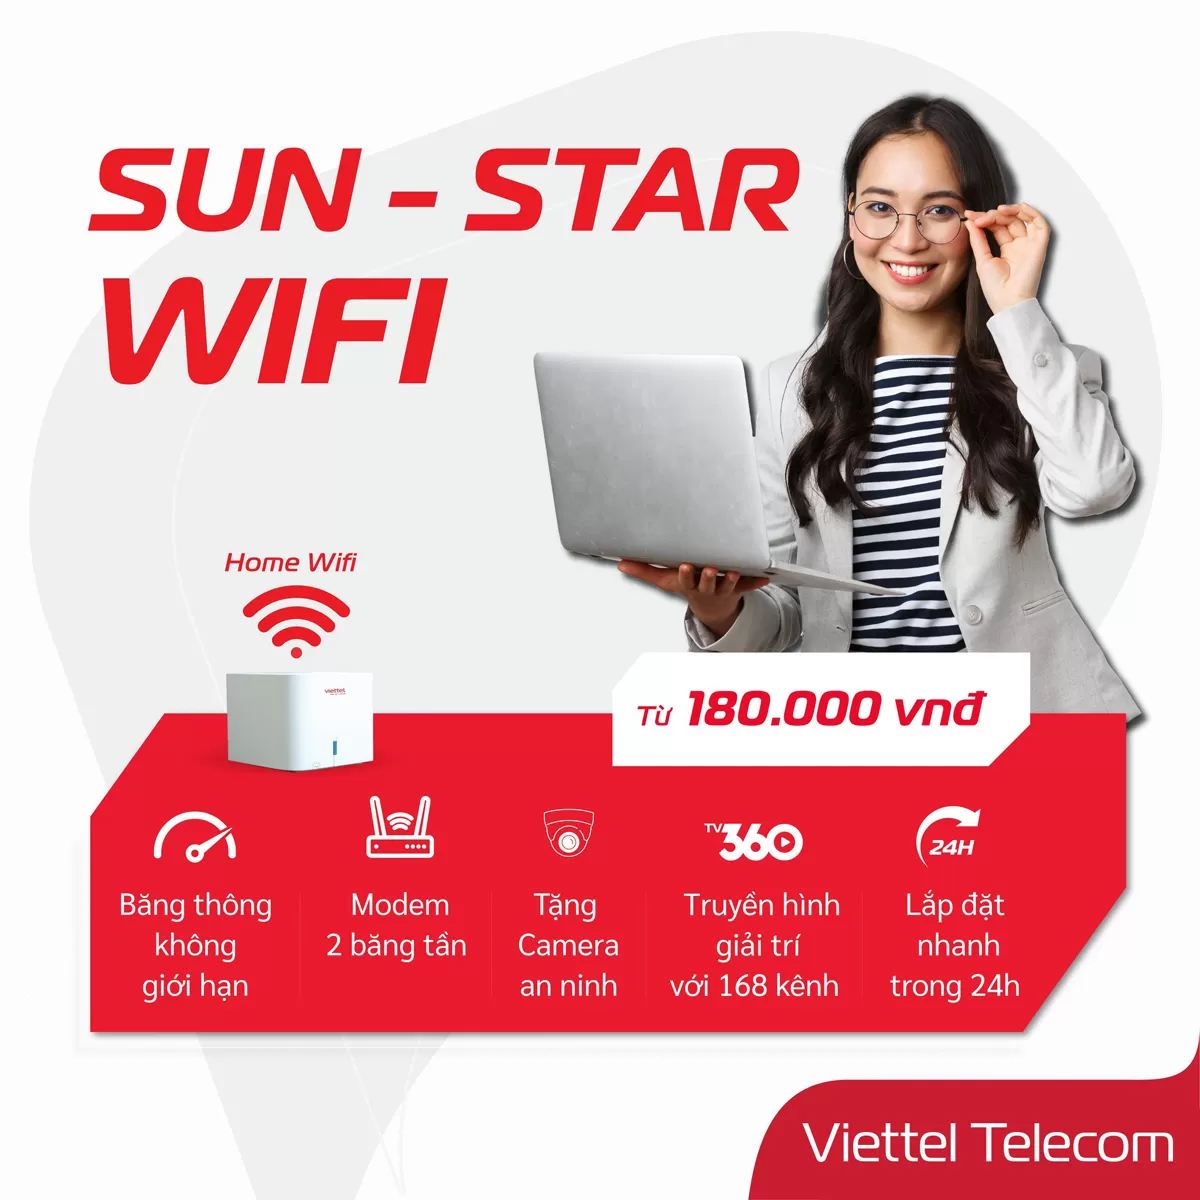 Liên hệ tư vấn lắp đặt mạng wifi tại Phú Giáo: 0962.128.222